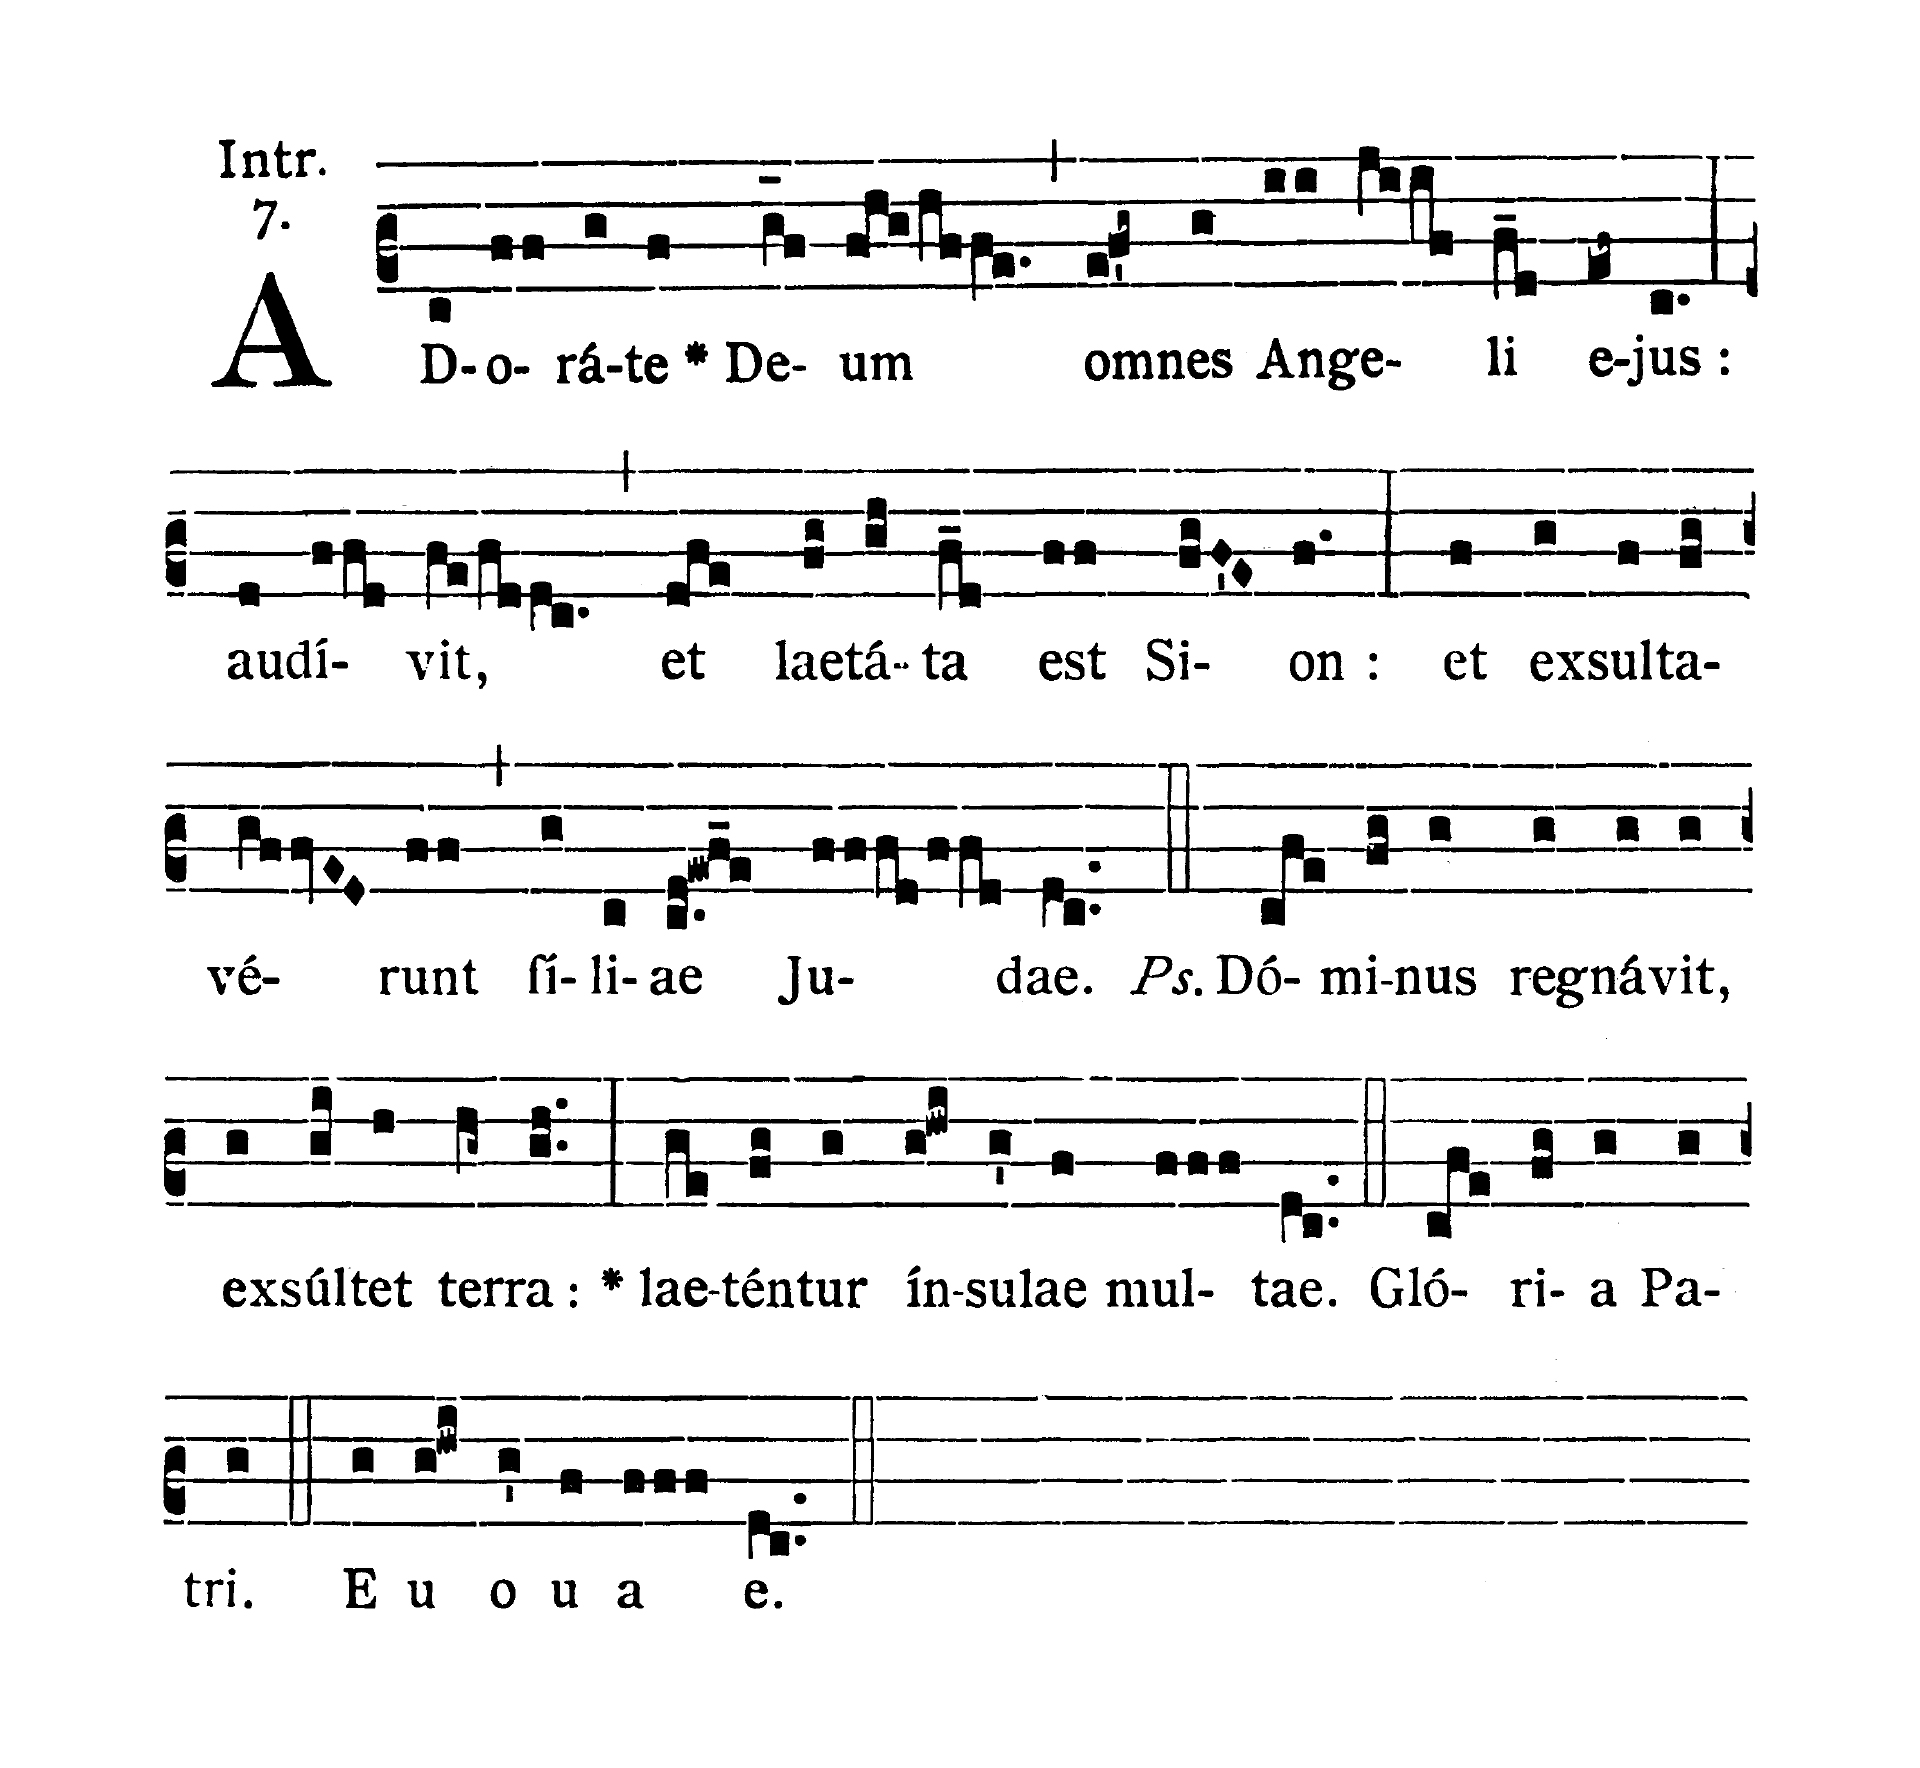 Dominica III post Epiphaniam - Introitus (Adorate Deum)